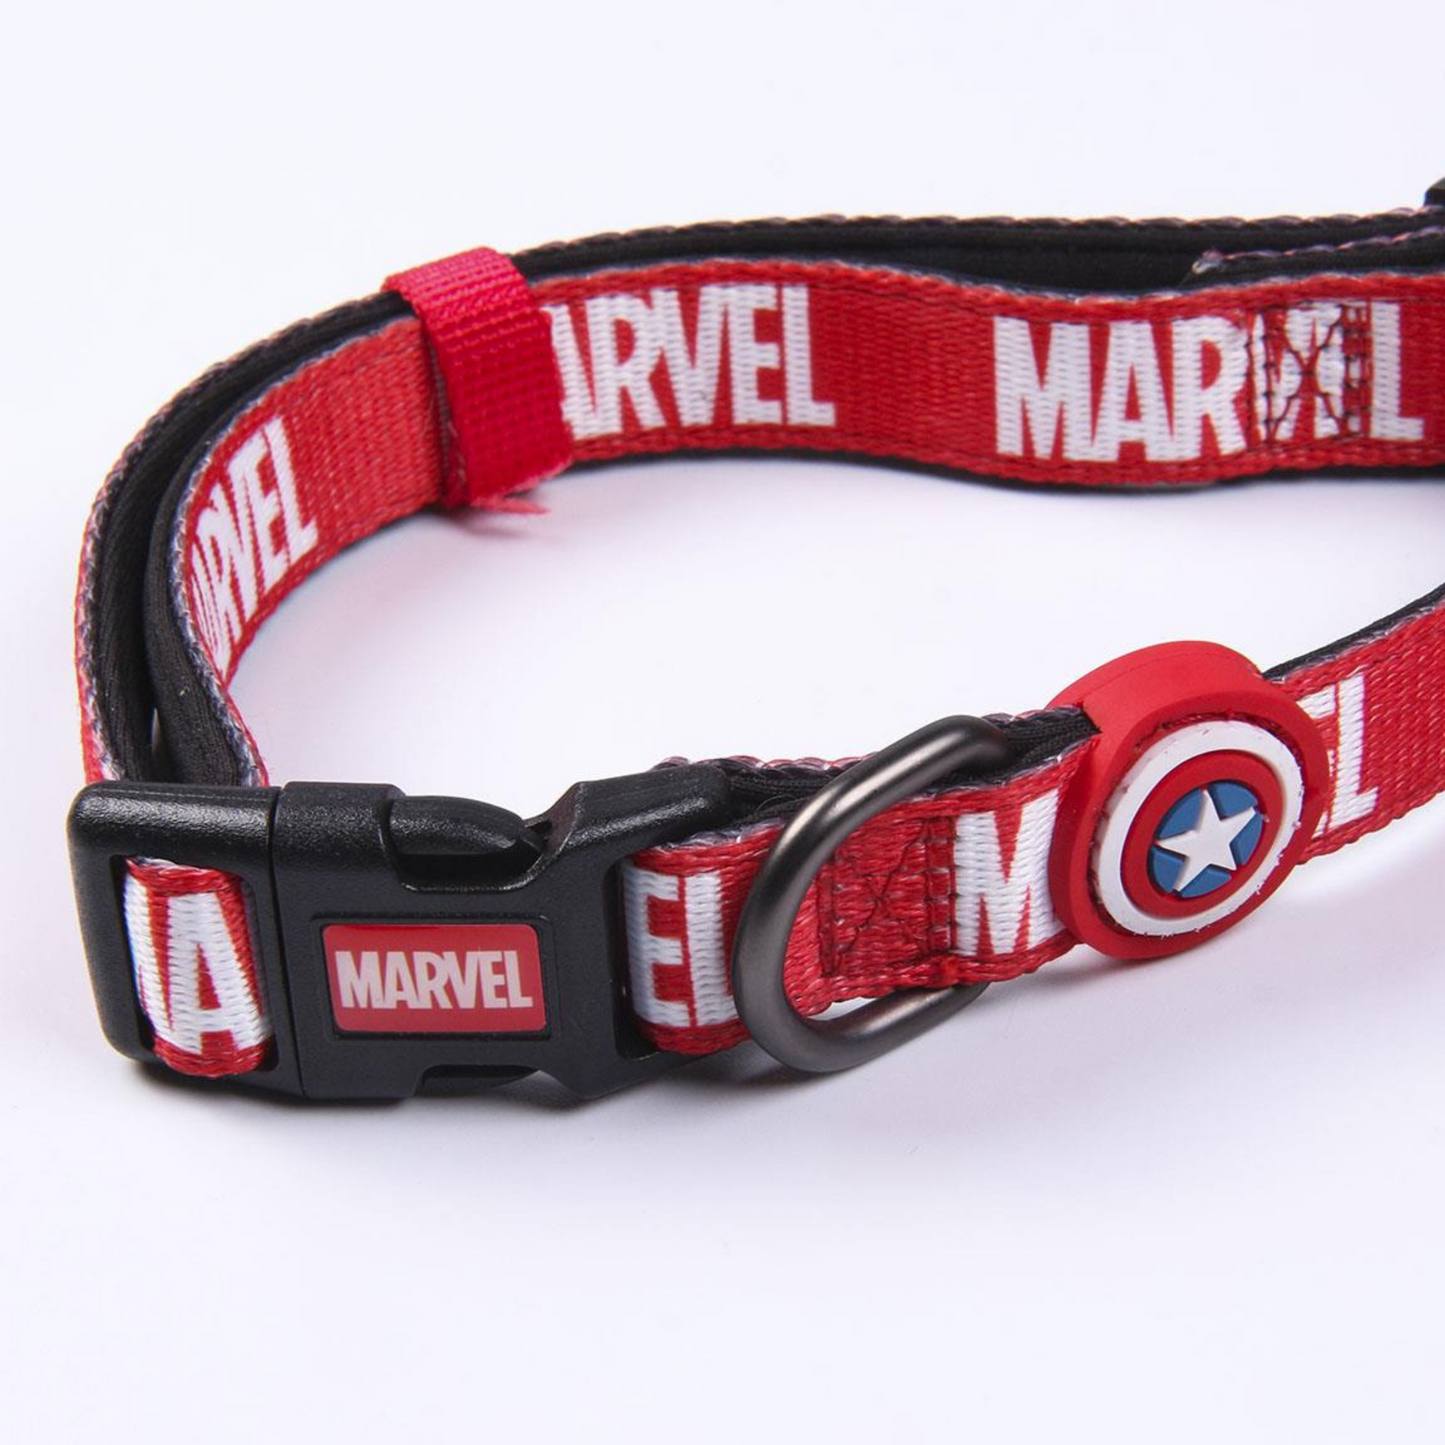 Marvel Avengers Dog Collar